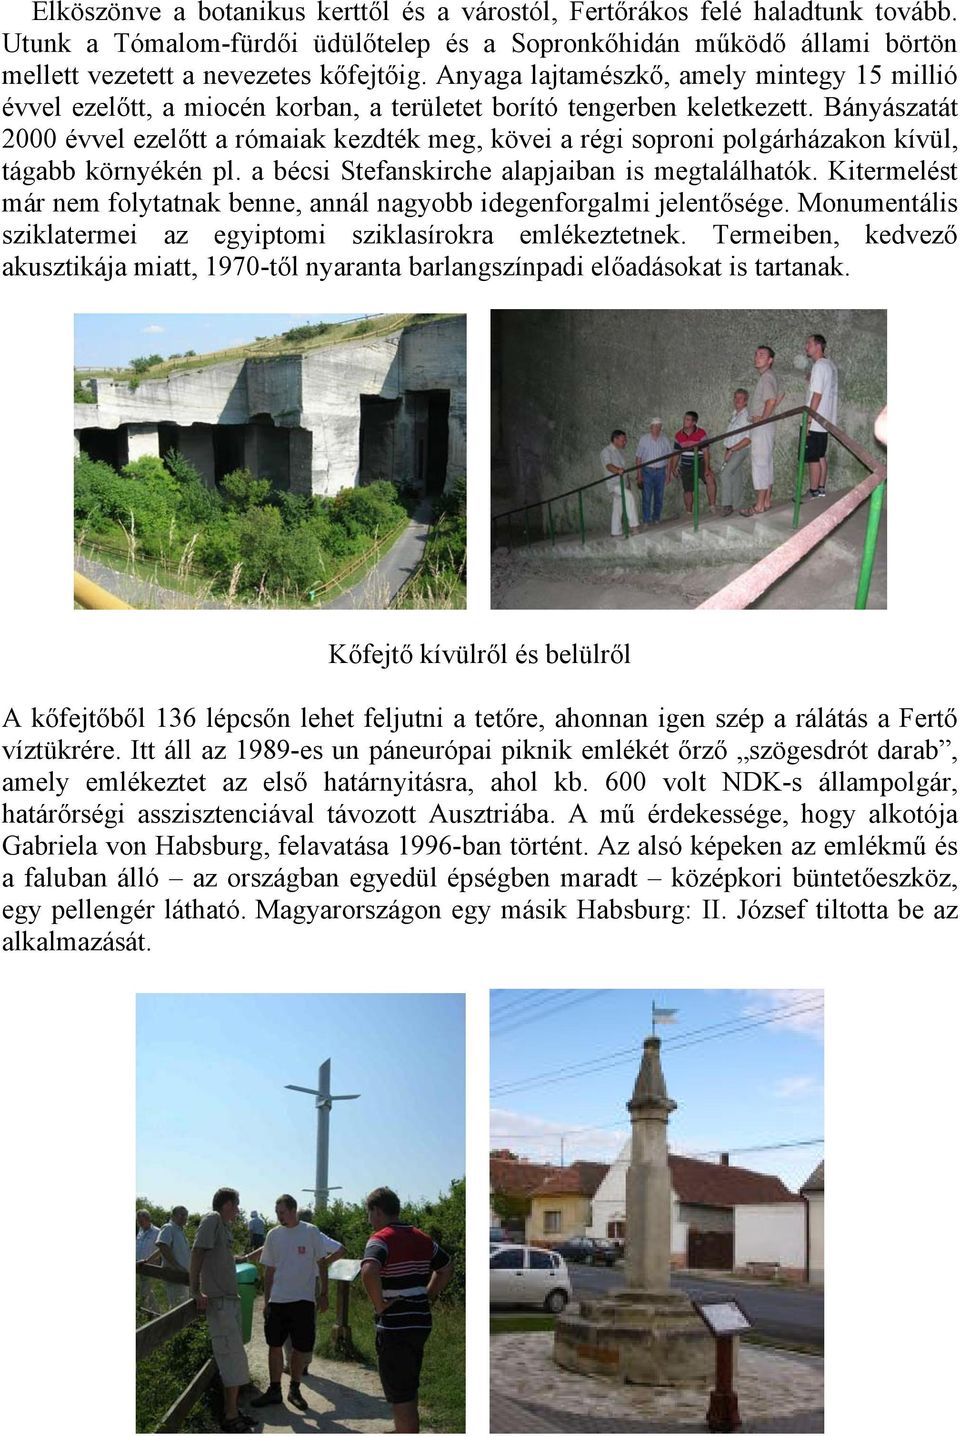 Bányászatát 2000 évvel ezelőtt a rómaiak kezdték meg, kövei a régi soproni polgárházakon kívül, tágabb környékén pl. a bécsi Stefanskirche alapjaiban is megtalálhatók.